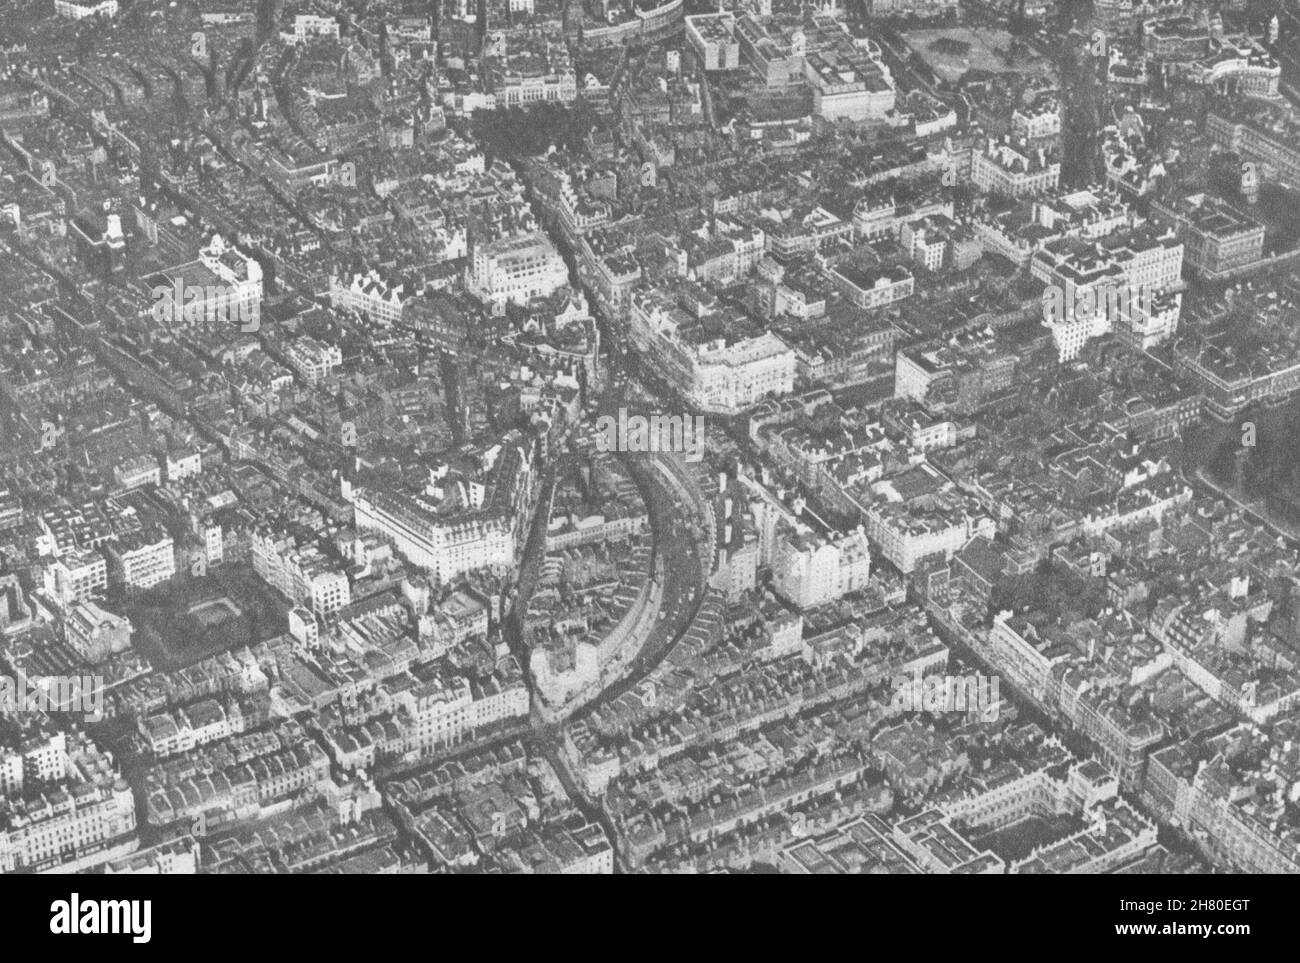 IM ZENTRUM VON LONDON. Burlington House zum Trafalgar Square, wie Flugzeuge es sehen 1926 Stockfoto